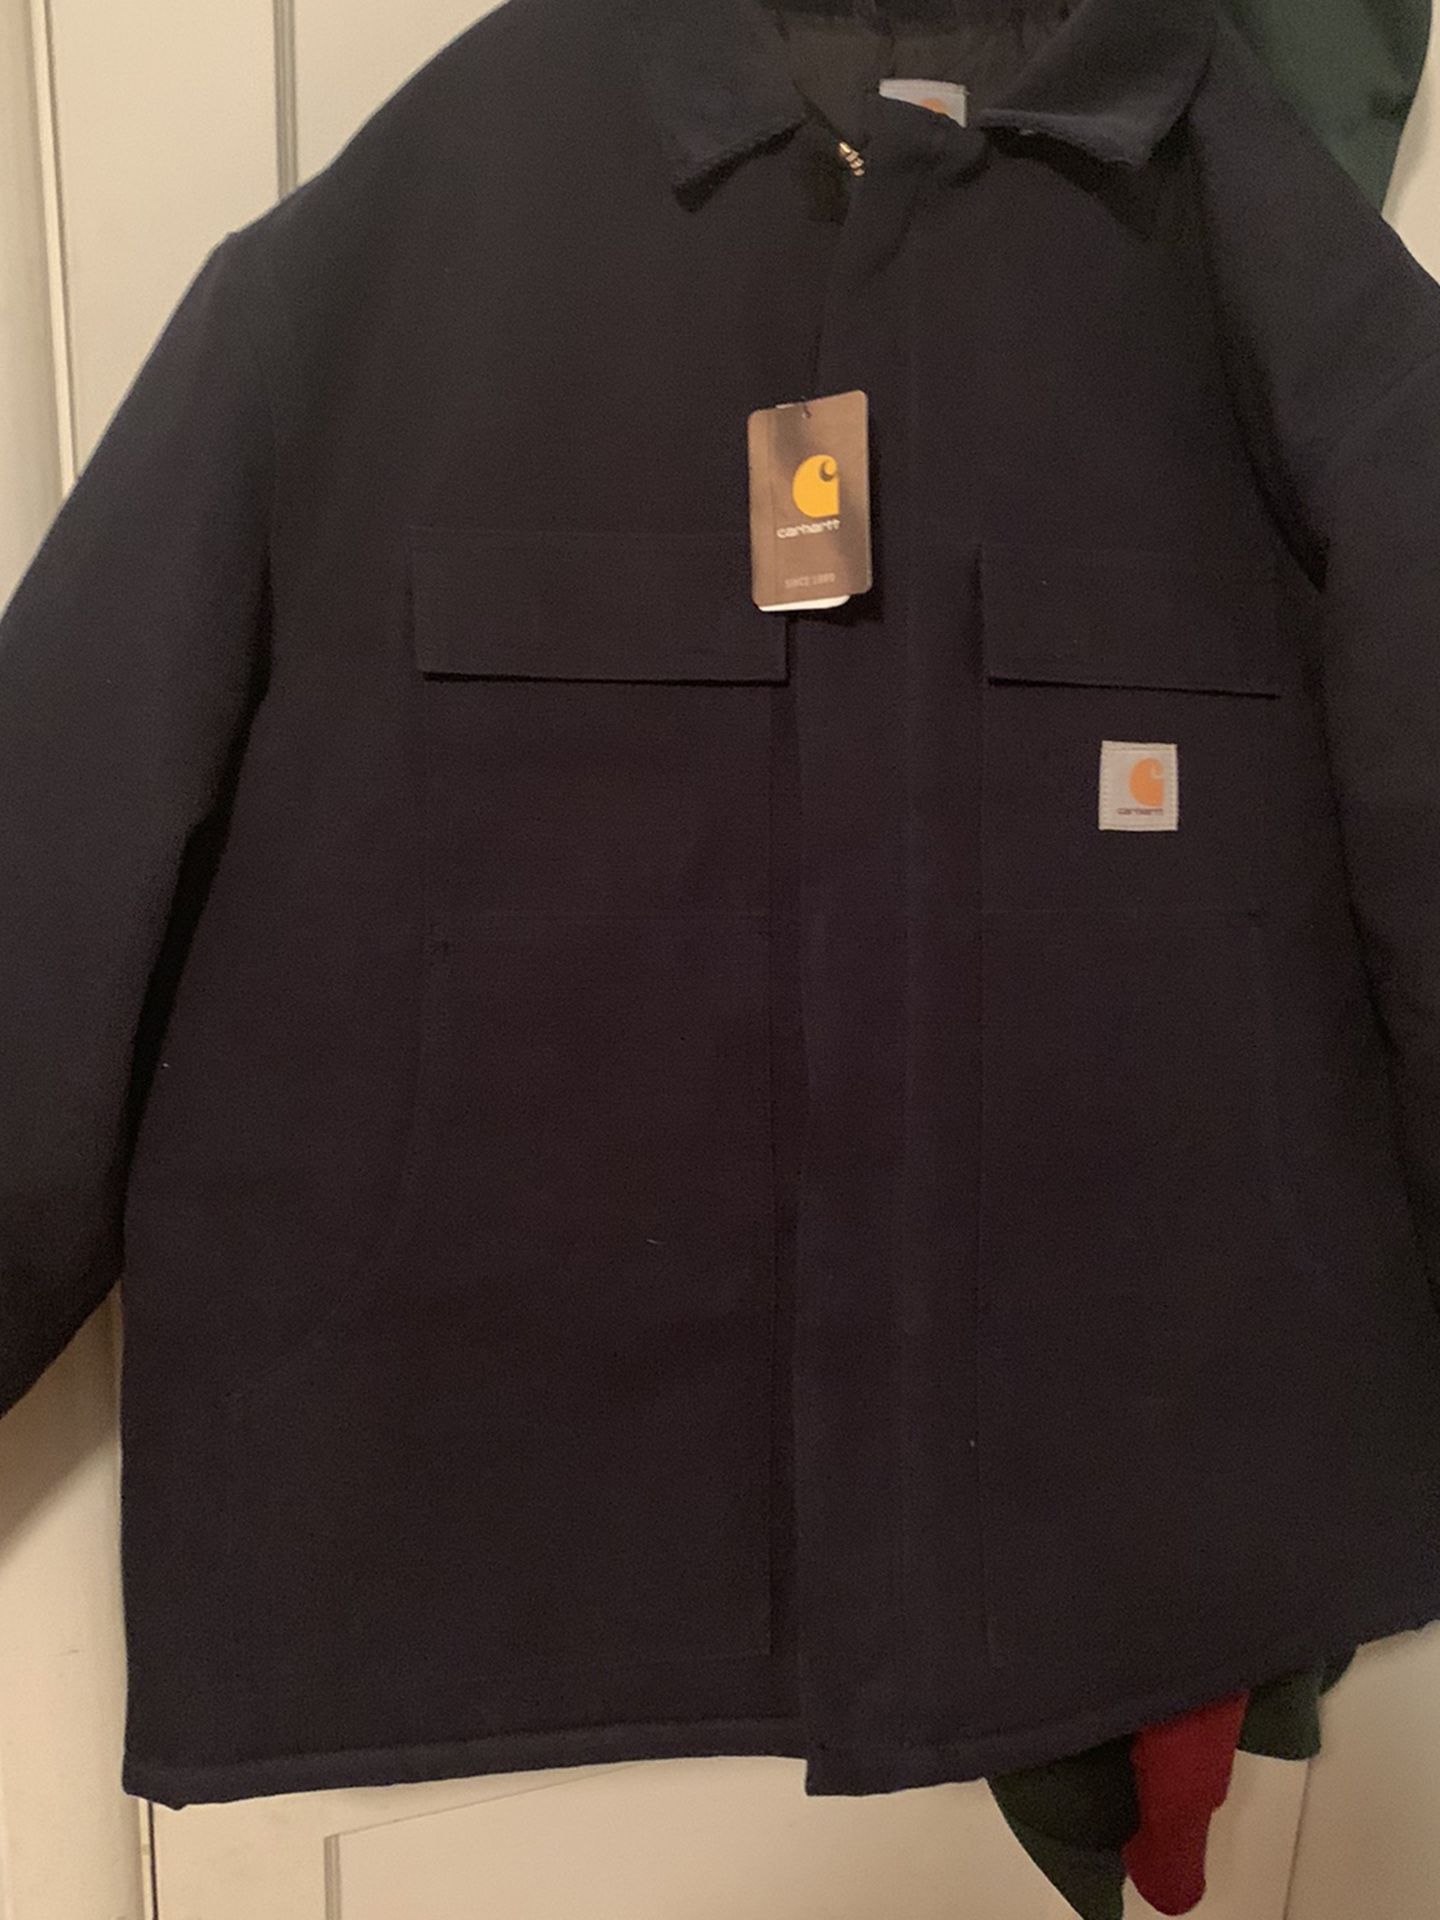 Carhart Jacket Size 2x